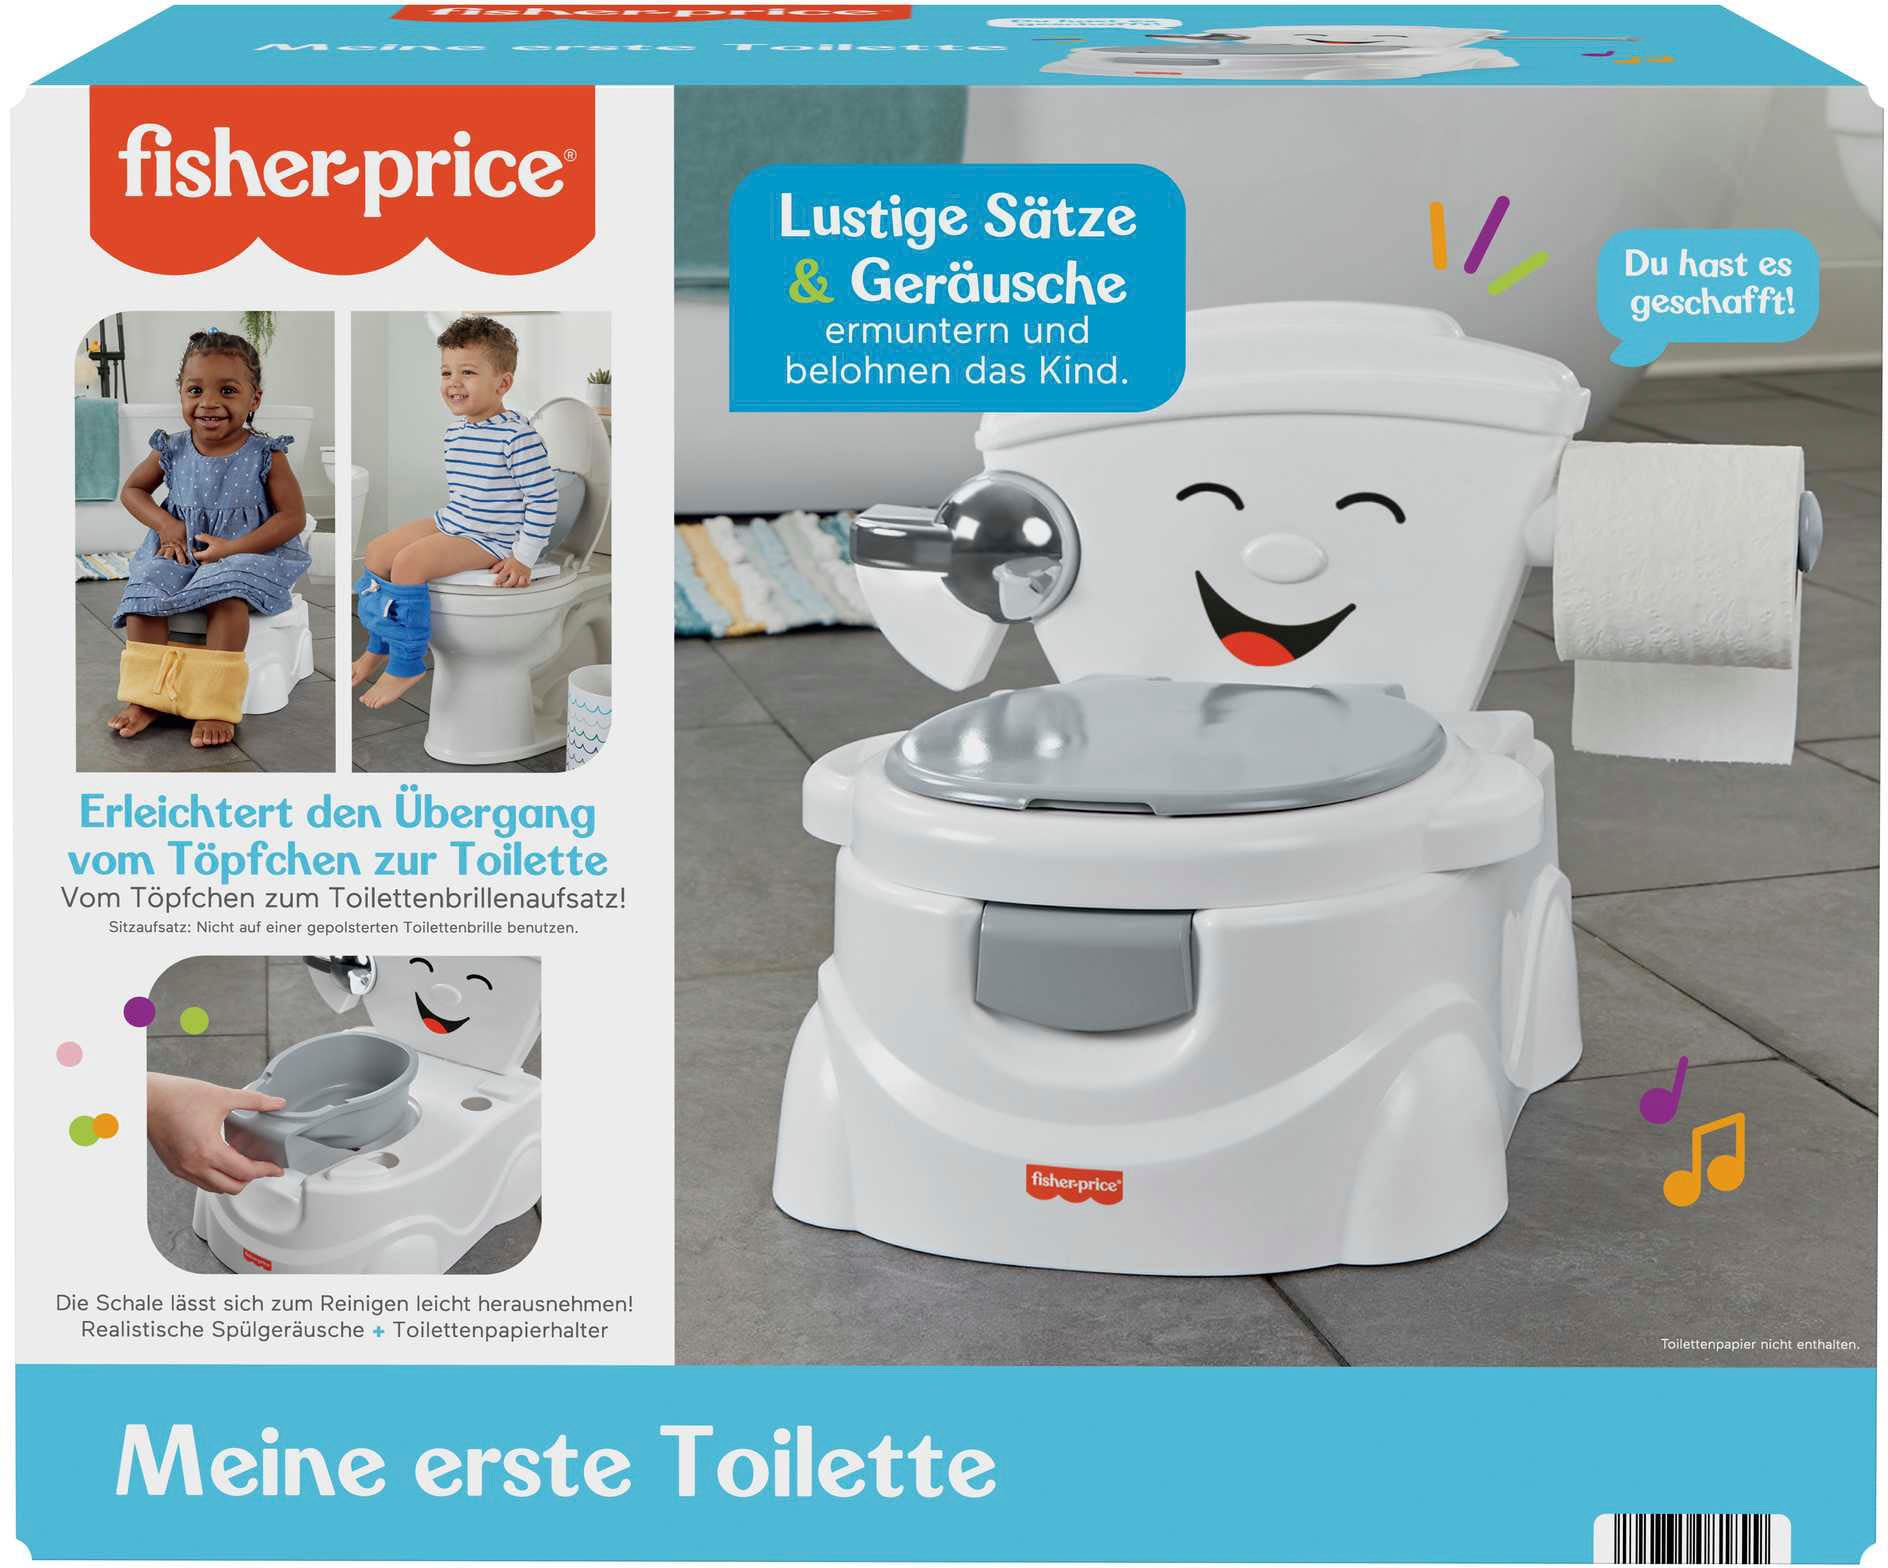 Friday | Toilettentrainer Toilette« erste Black Fisher-Price® »Meine BAUR